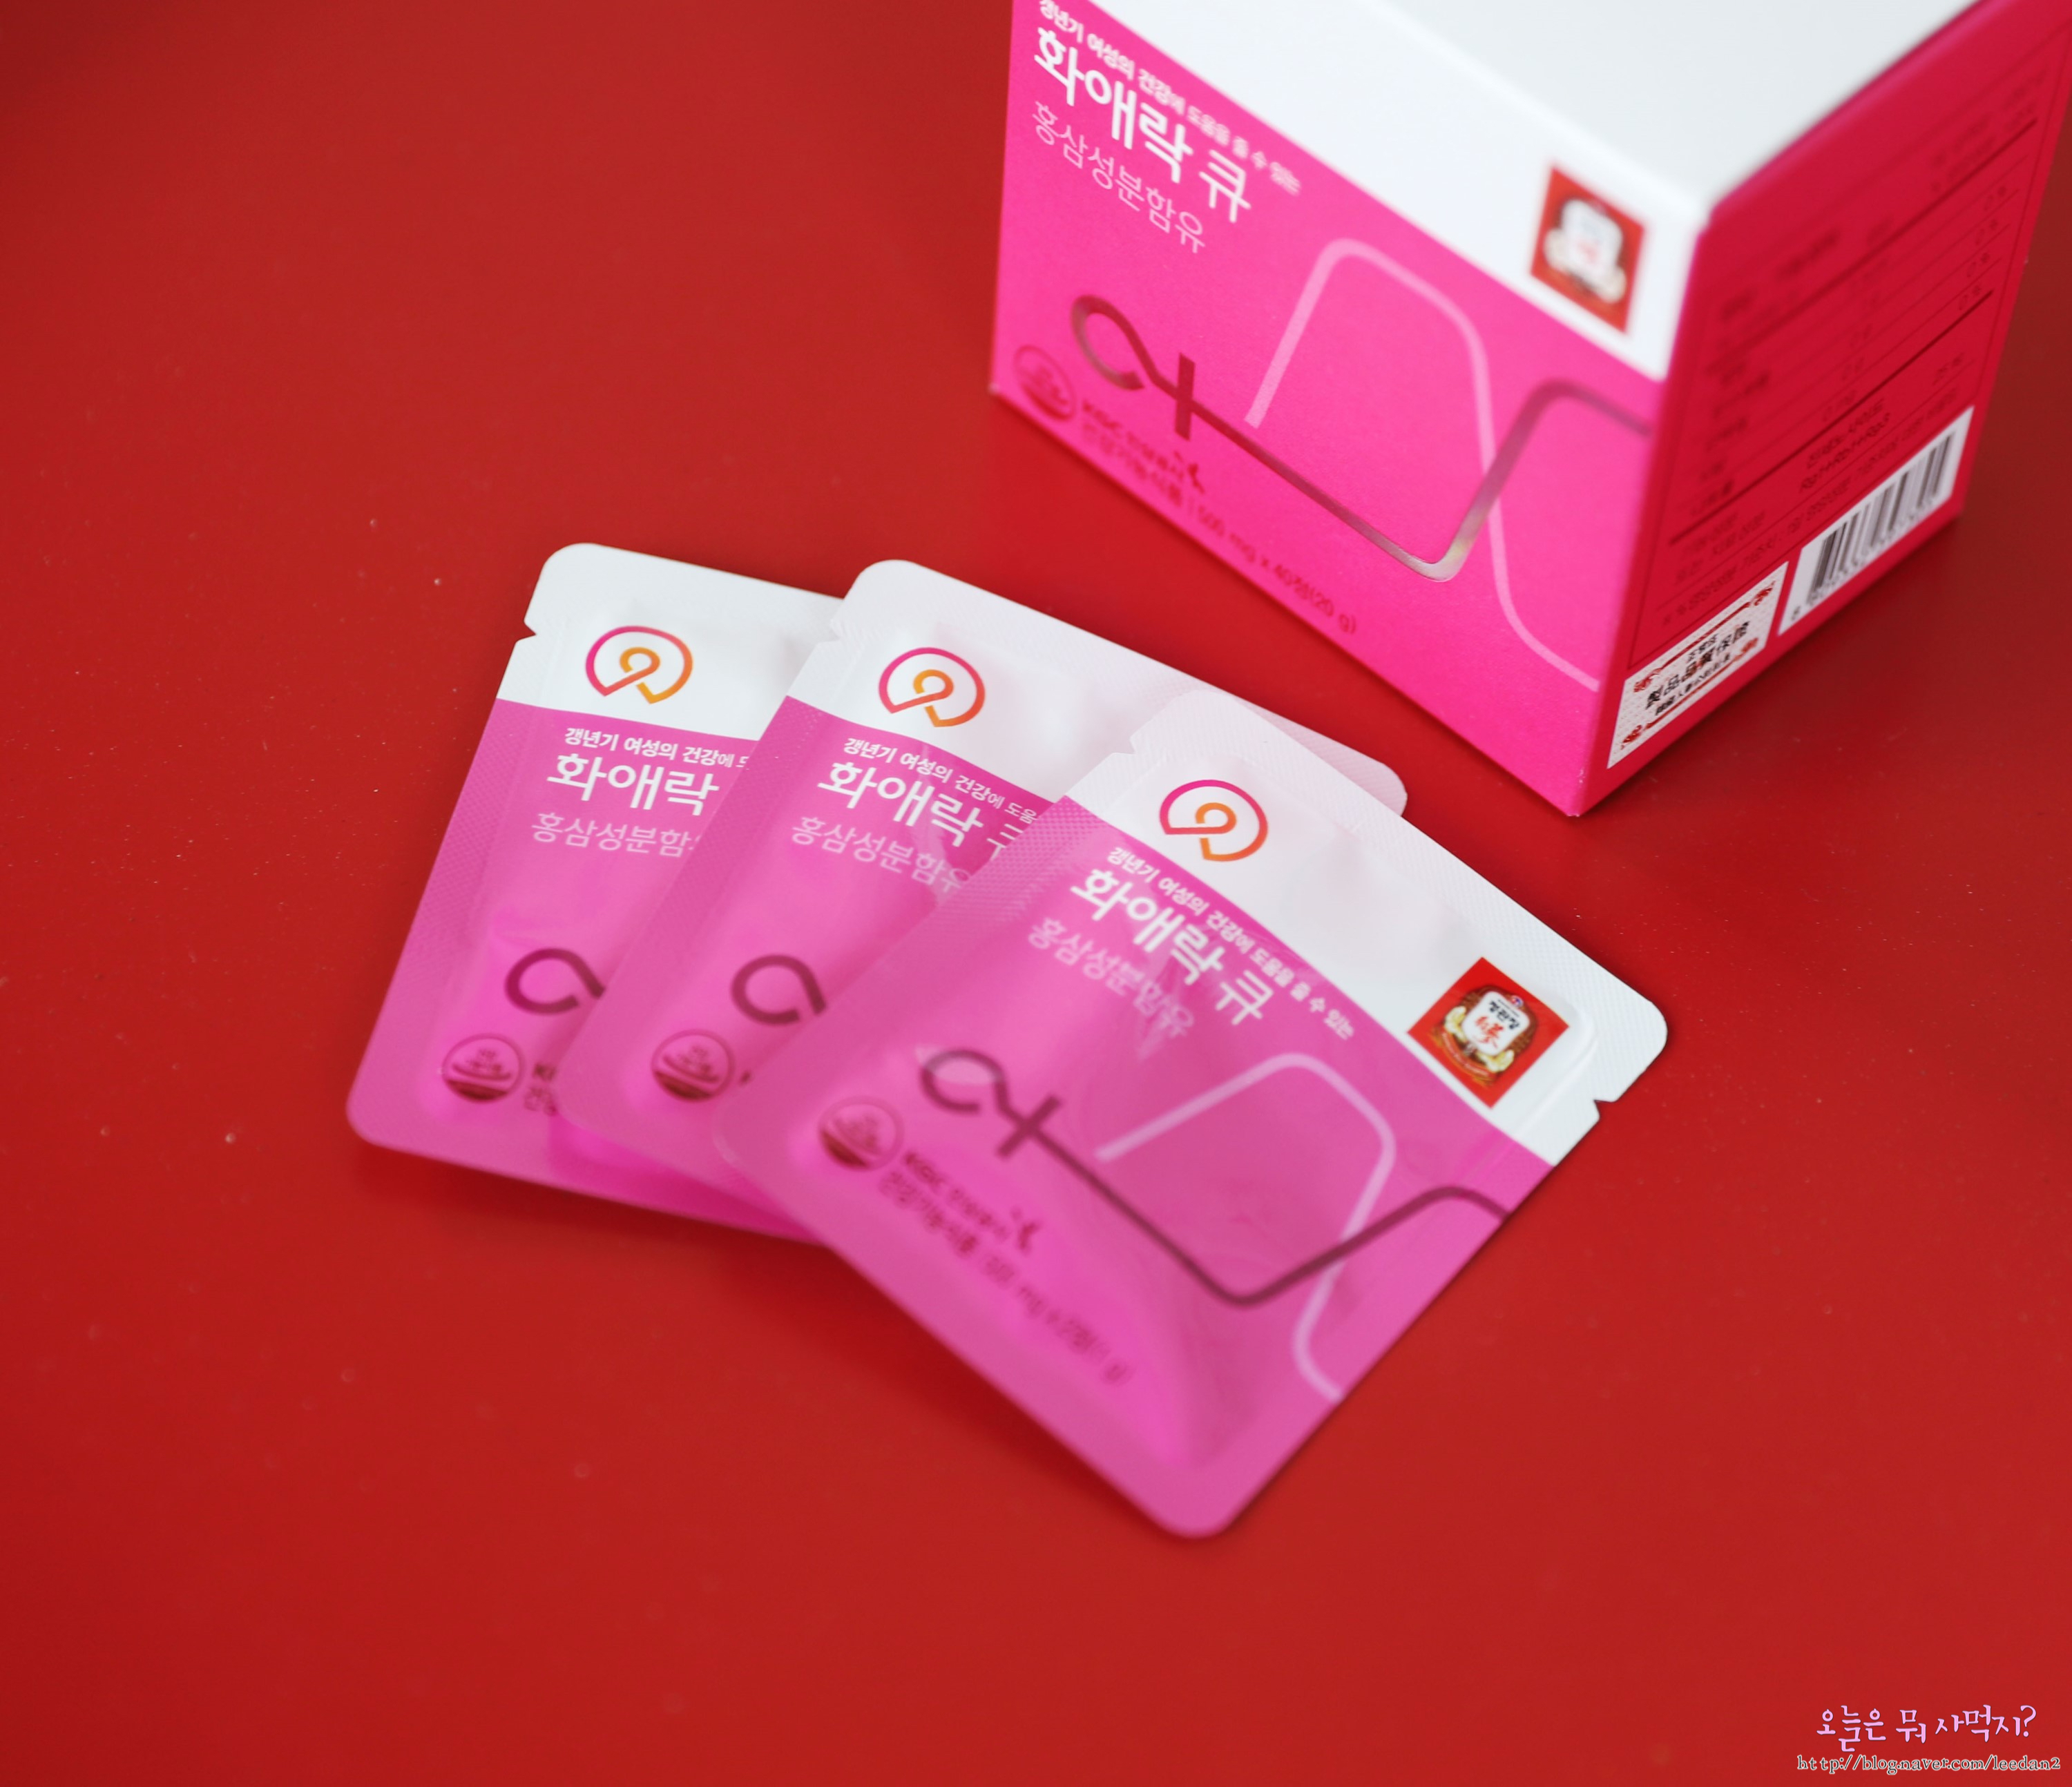 Viên hồng sâm Hwa Ae Rak của KGC là một trong những sản phẩm chuyên biệt rất tốt cho phụ nữ độ tuổi từ 25 đến 60.